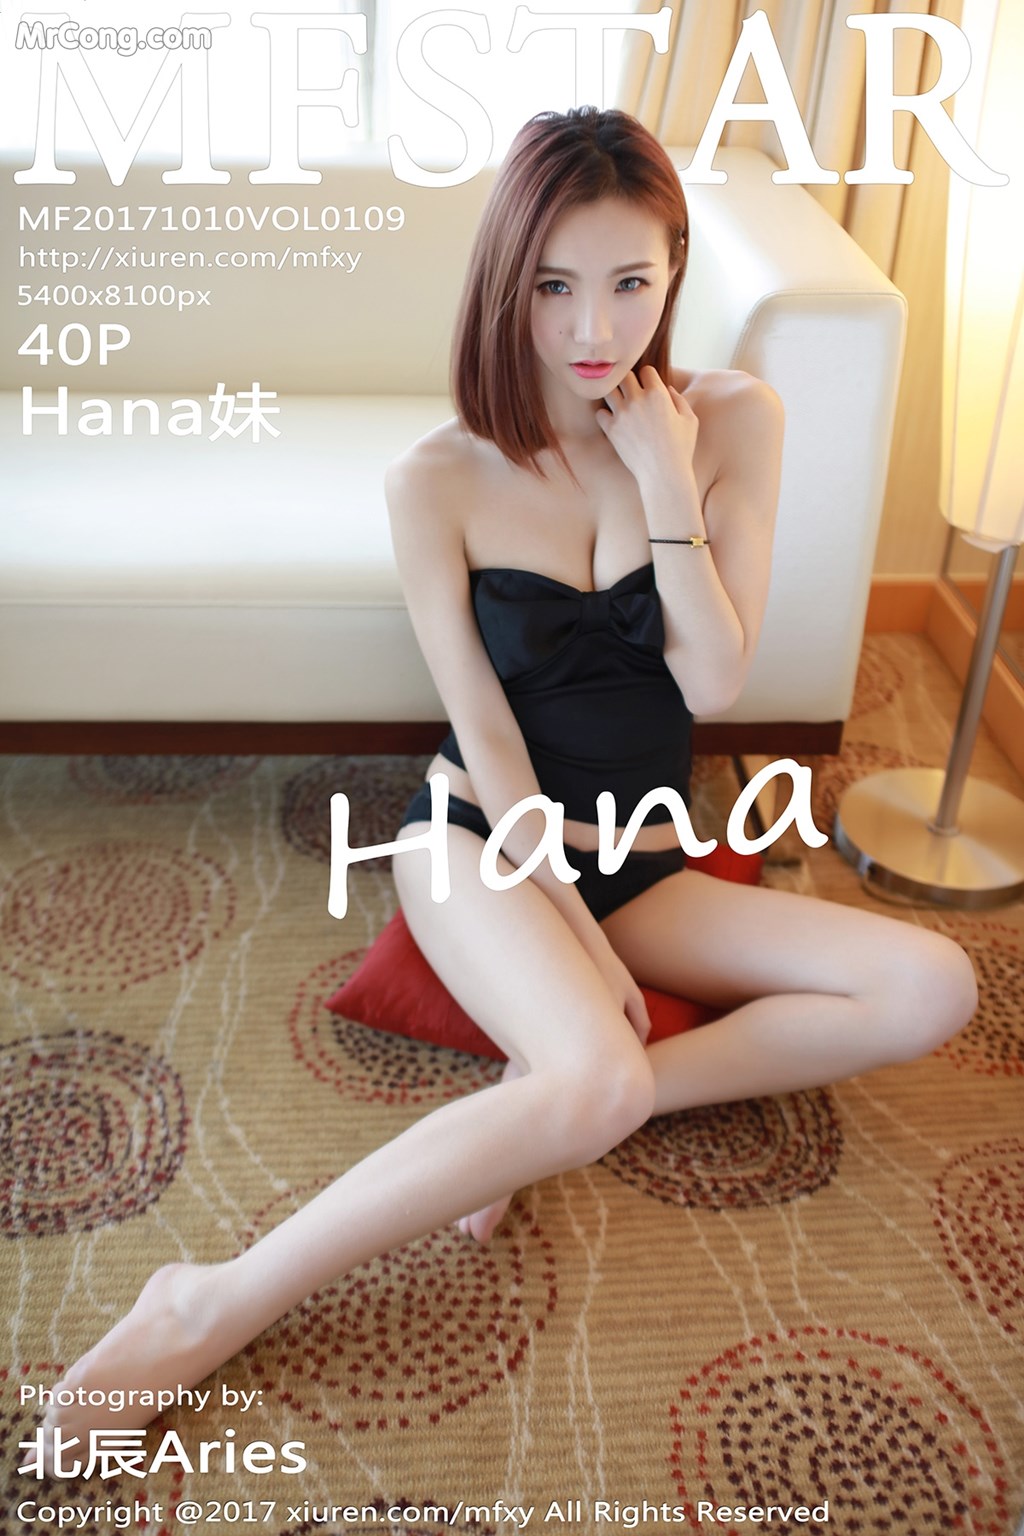 MFStar Vol.109: Hana Model 妹 (41 photos)